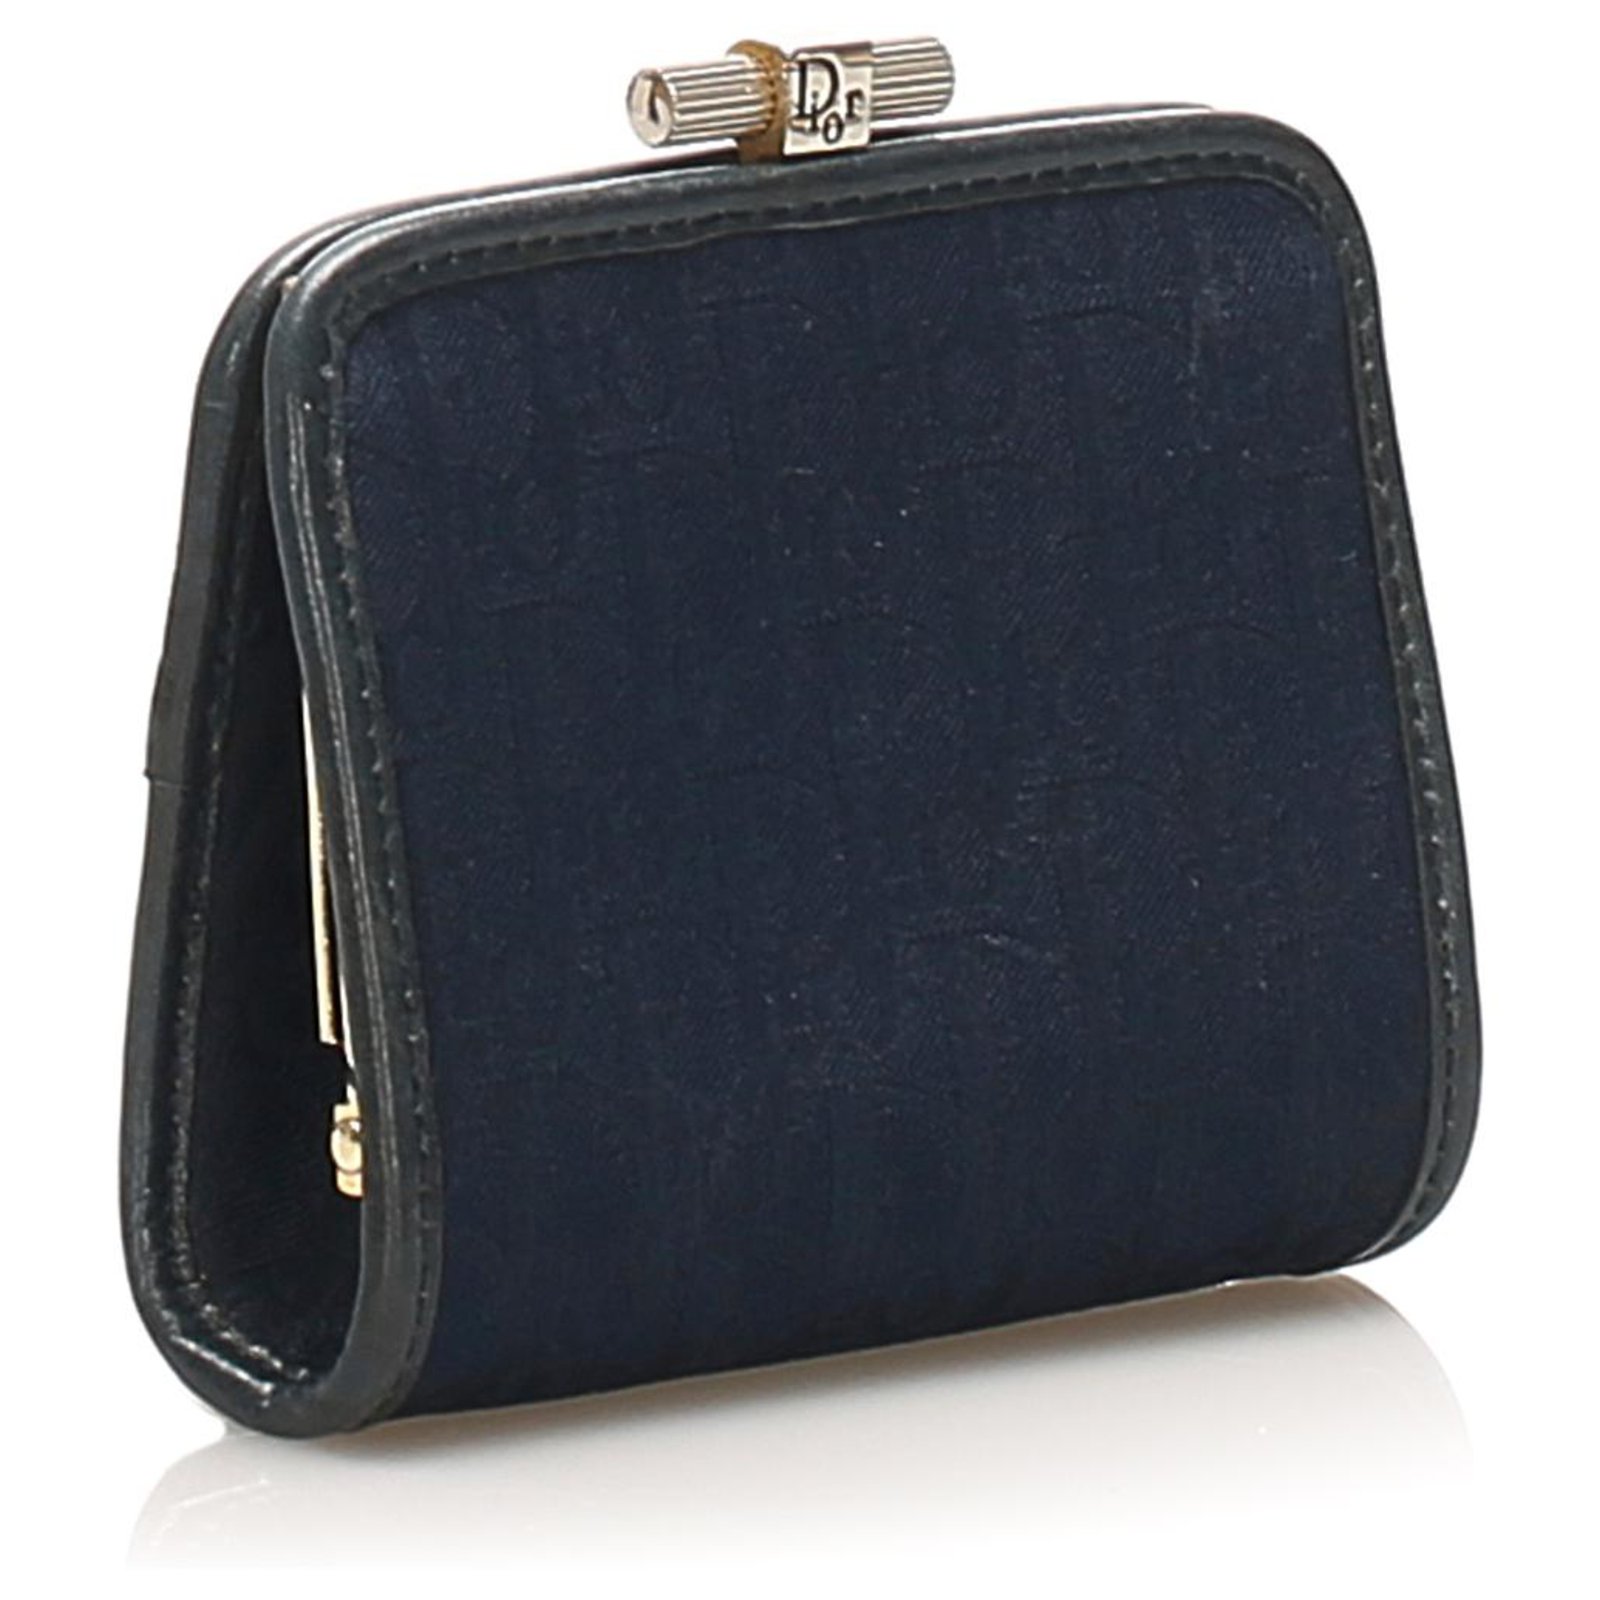 dior blue purse